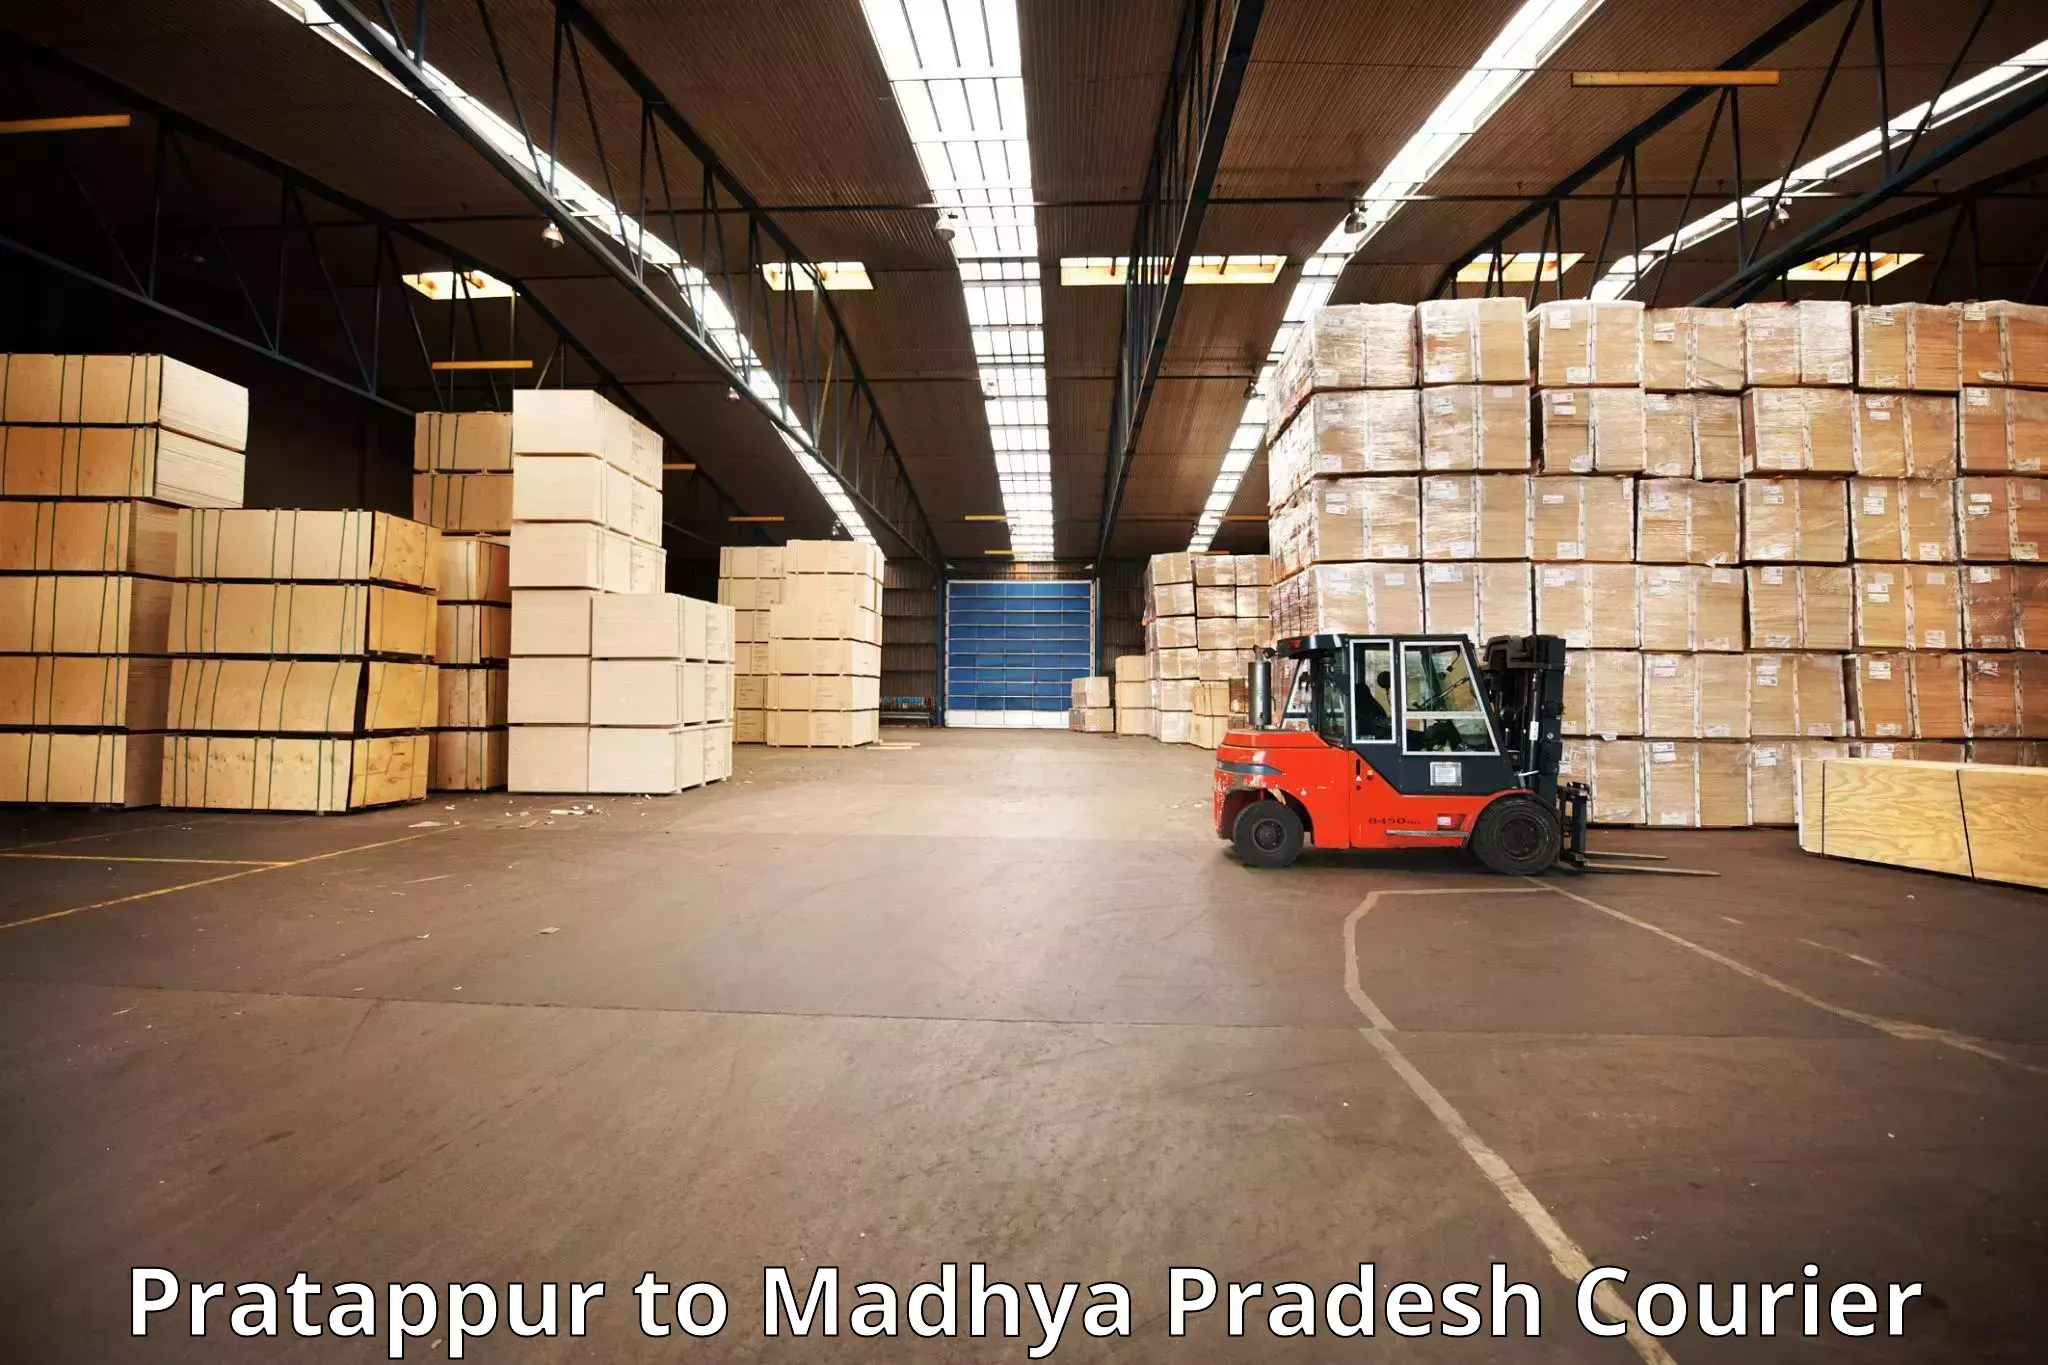 Luggage delivery system Pratappur to Madhya Pradesh